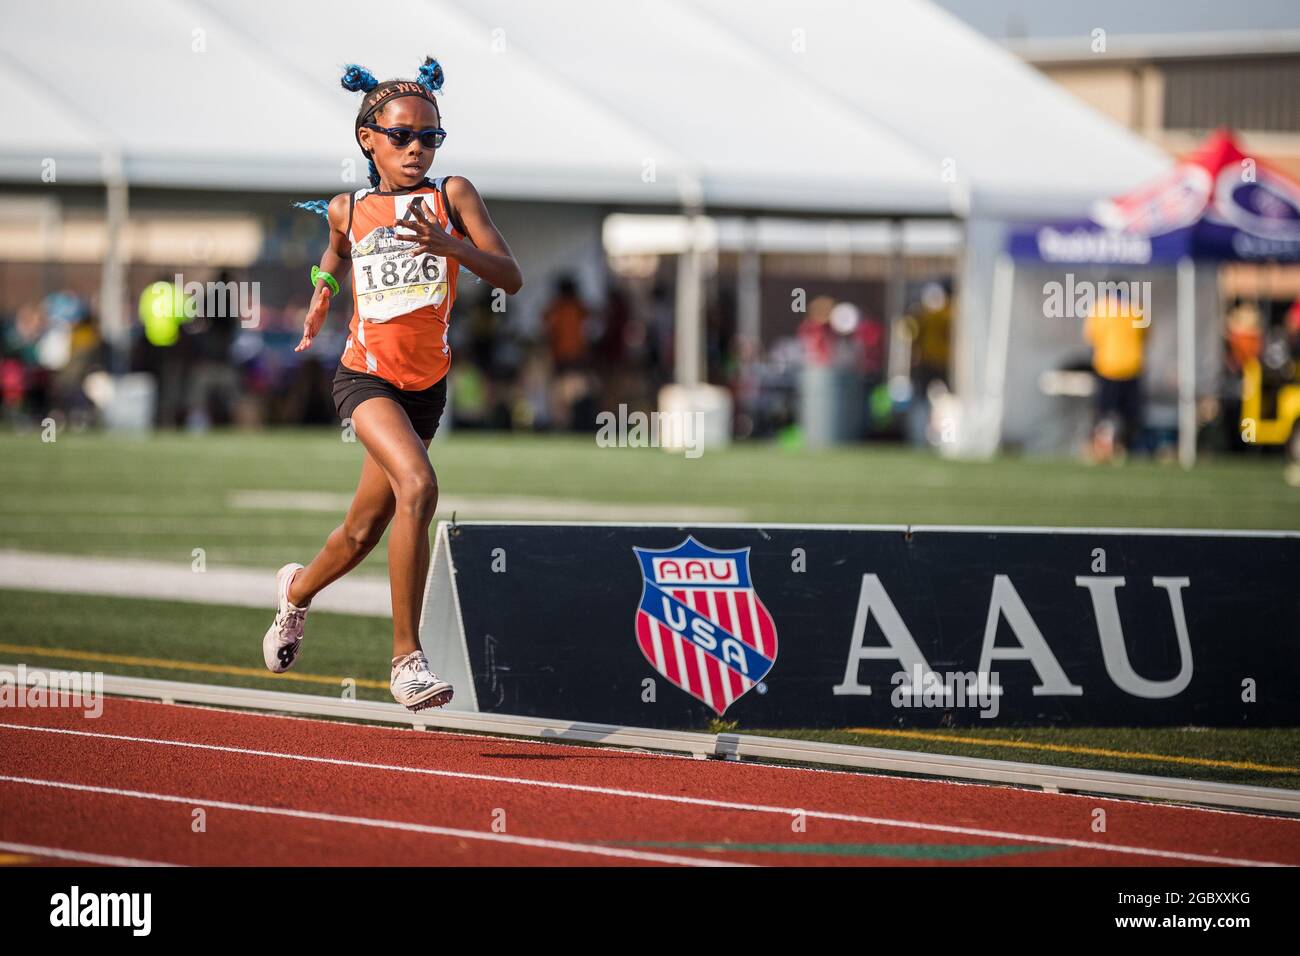 Texas, Estados Unidos. 5 de agosto de 2021: Melodi Ashford compite durante  la carrera de 1500 metros de niñas de nueve años en los Juegos Olímpicos  Junior de la AAU 2021 en